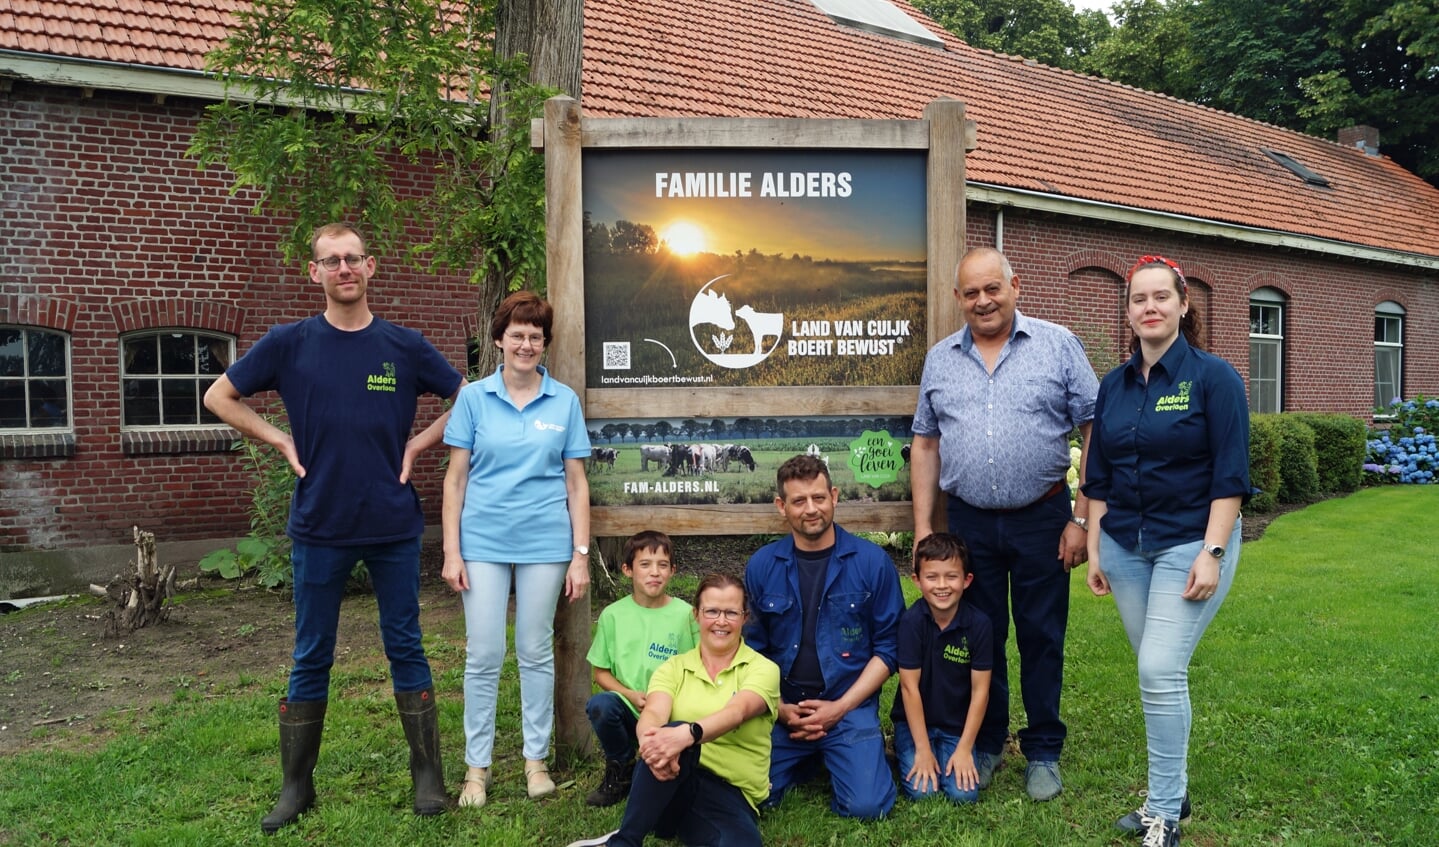 Ook bij familie Alders aan de Rieterdreef 3a in Overloon stond al een aantal maanden het bedrijfsbord van Land van Cuijk Boert Bewust.  